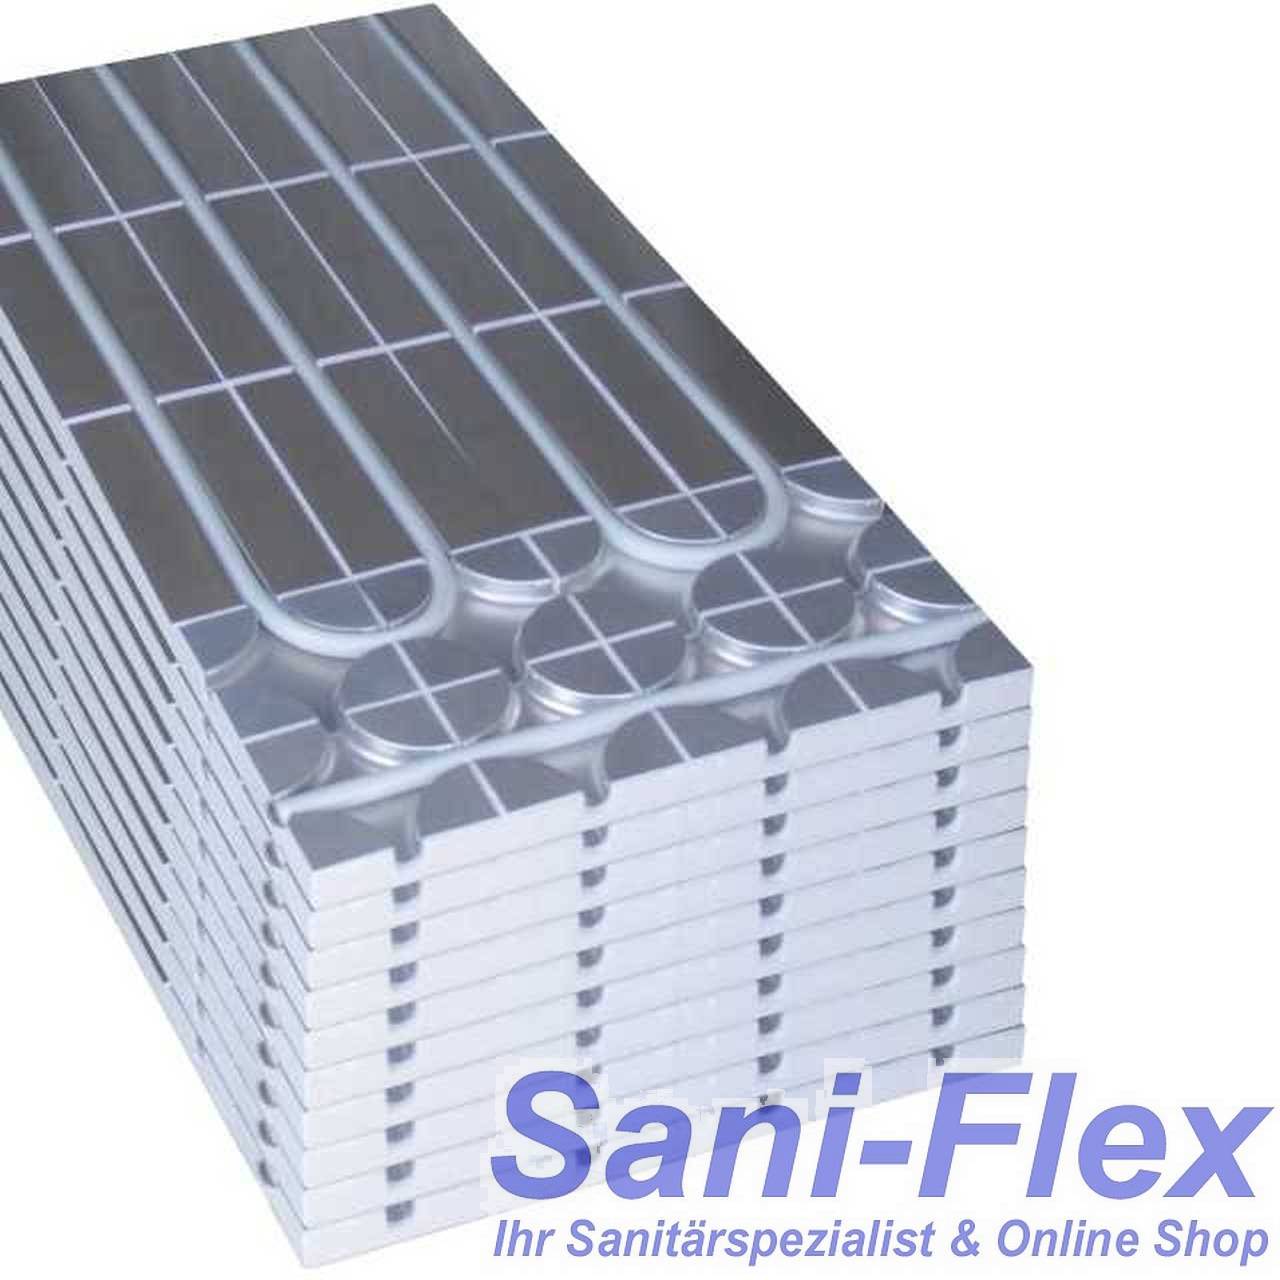 10 Stück = 5m² Sani-DRY Systemplatten zur Erweiterung unserer Trockenbau Fußbodenheizung, ohne Heizrohr ohne Regelung